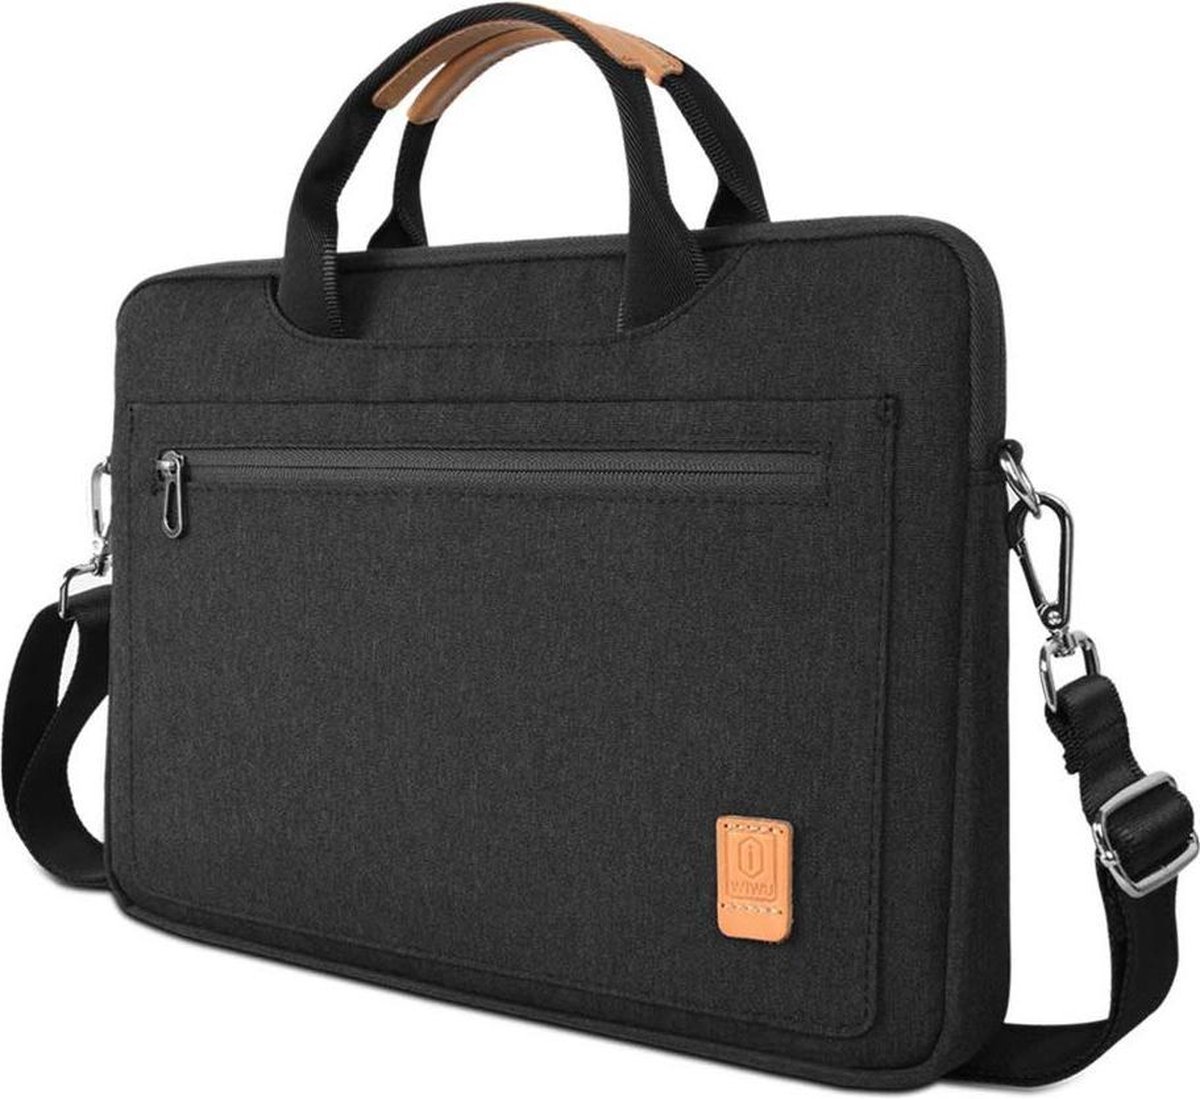 Laptoptas geschikt voor Fuijtsu Lifebook - 13.3 inch Pioneer Waterafstotende laptoptas met schouderband - Zwart